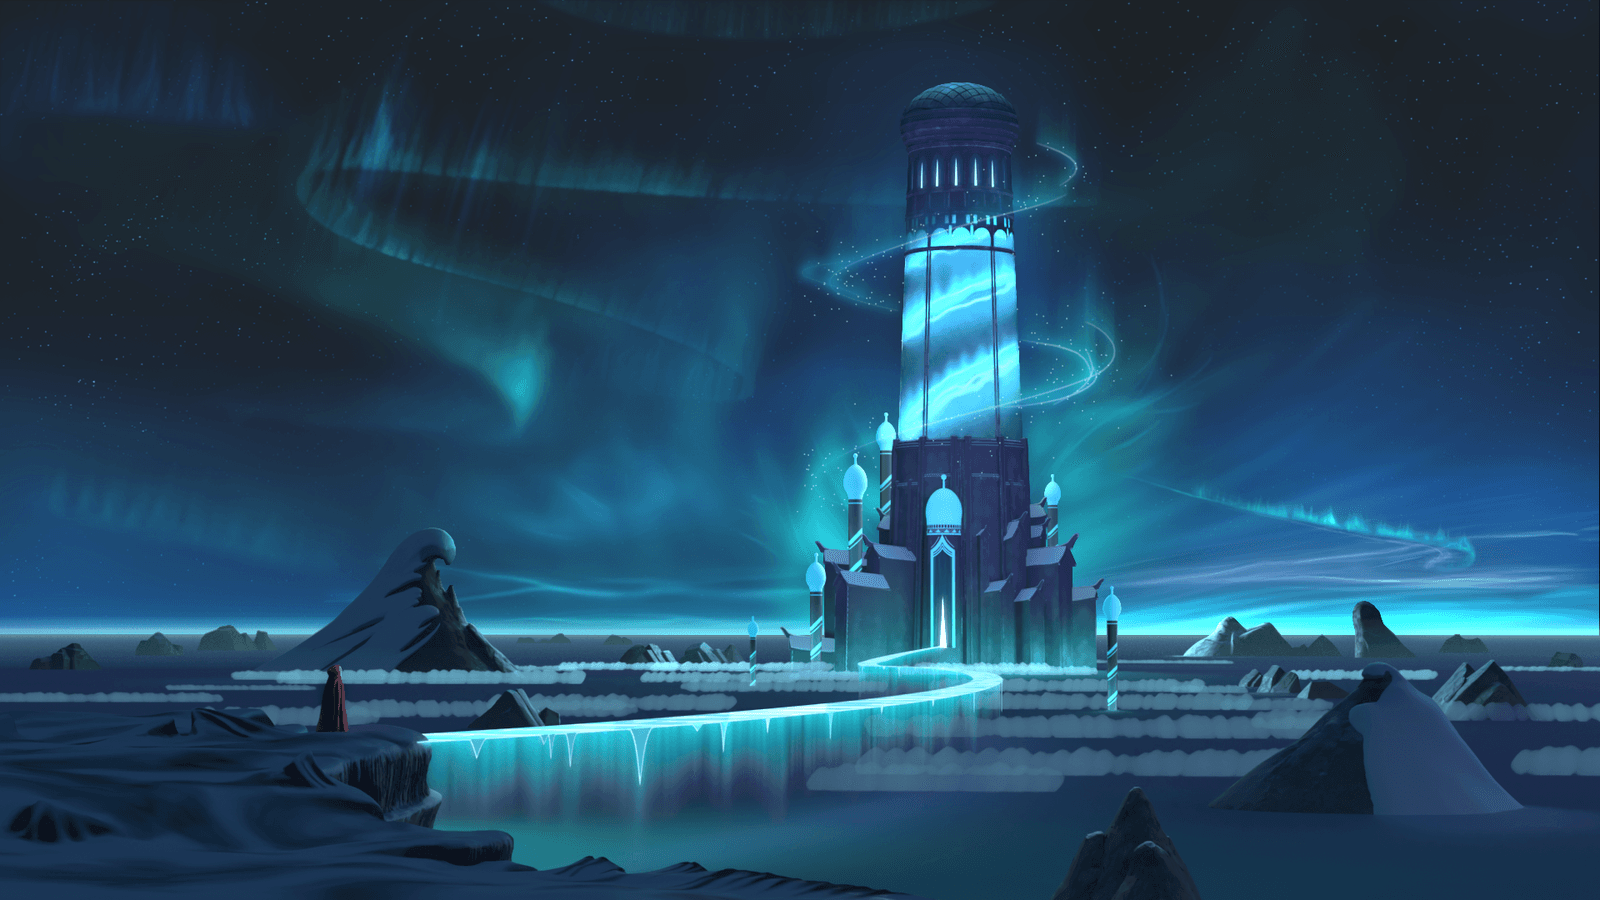 "Ice Castle" by Evan Barreiro